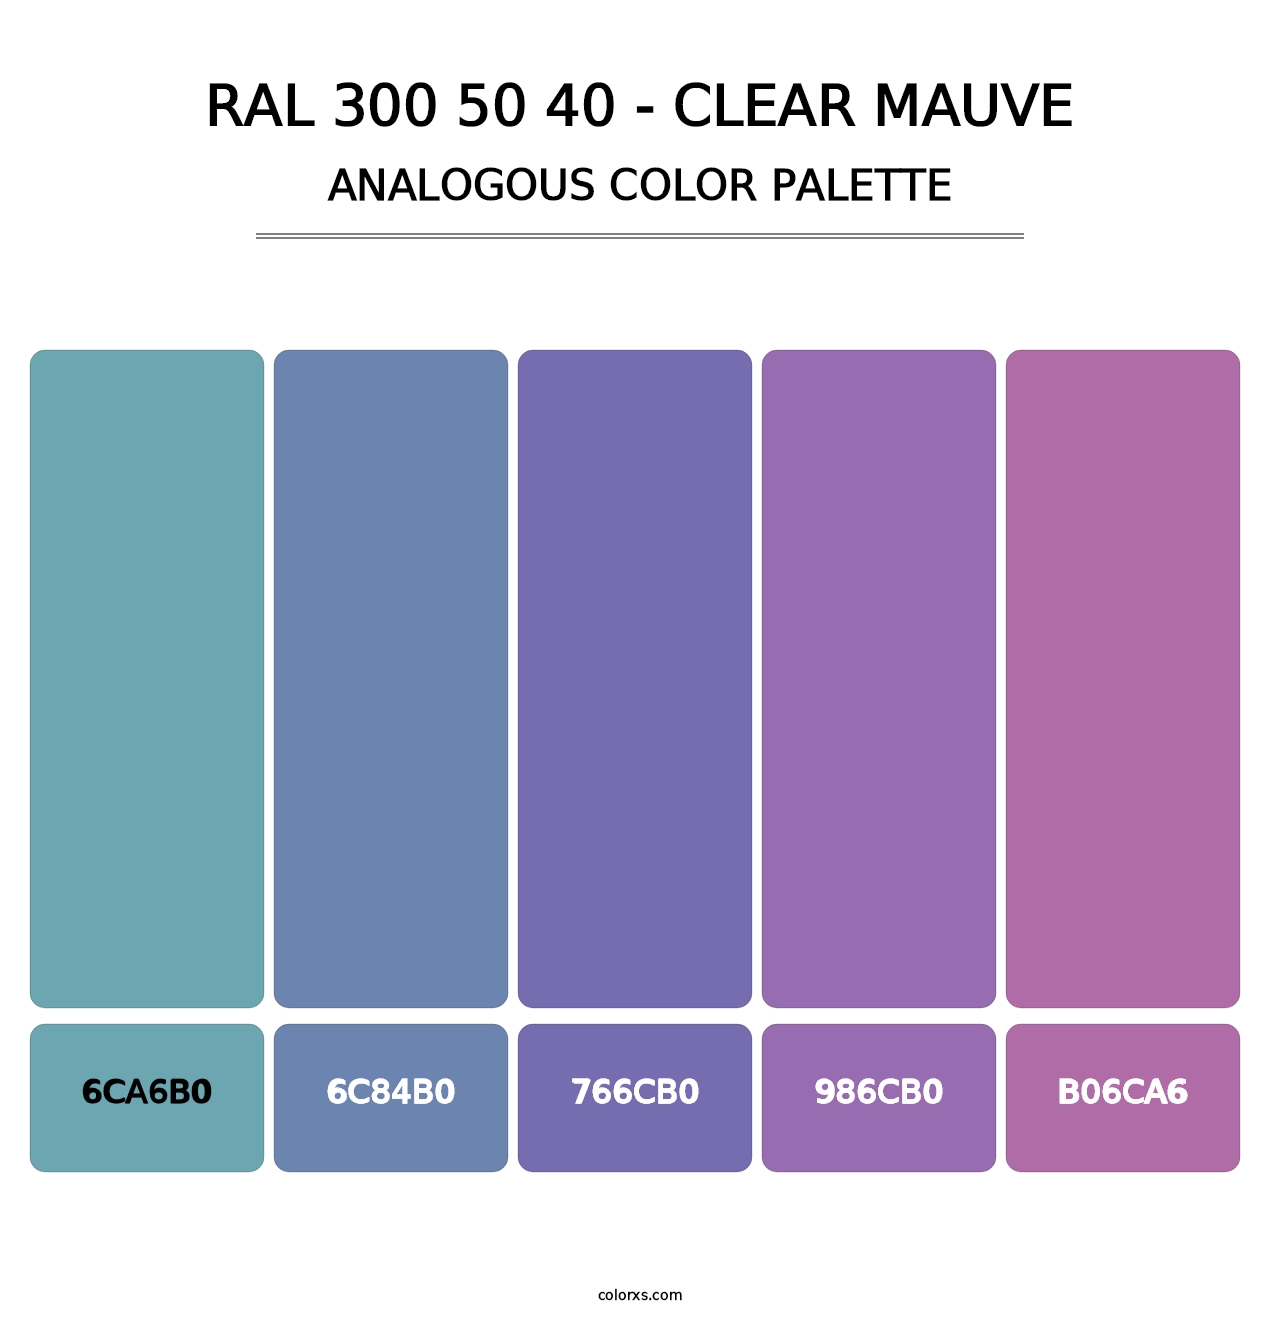 RAL 300 50 40 - Clear Mauve - Analogous Color Palette